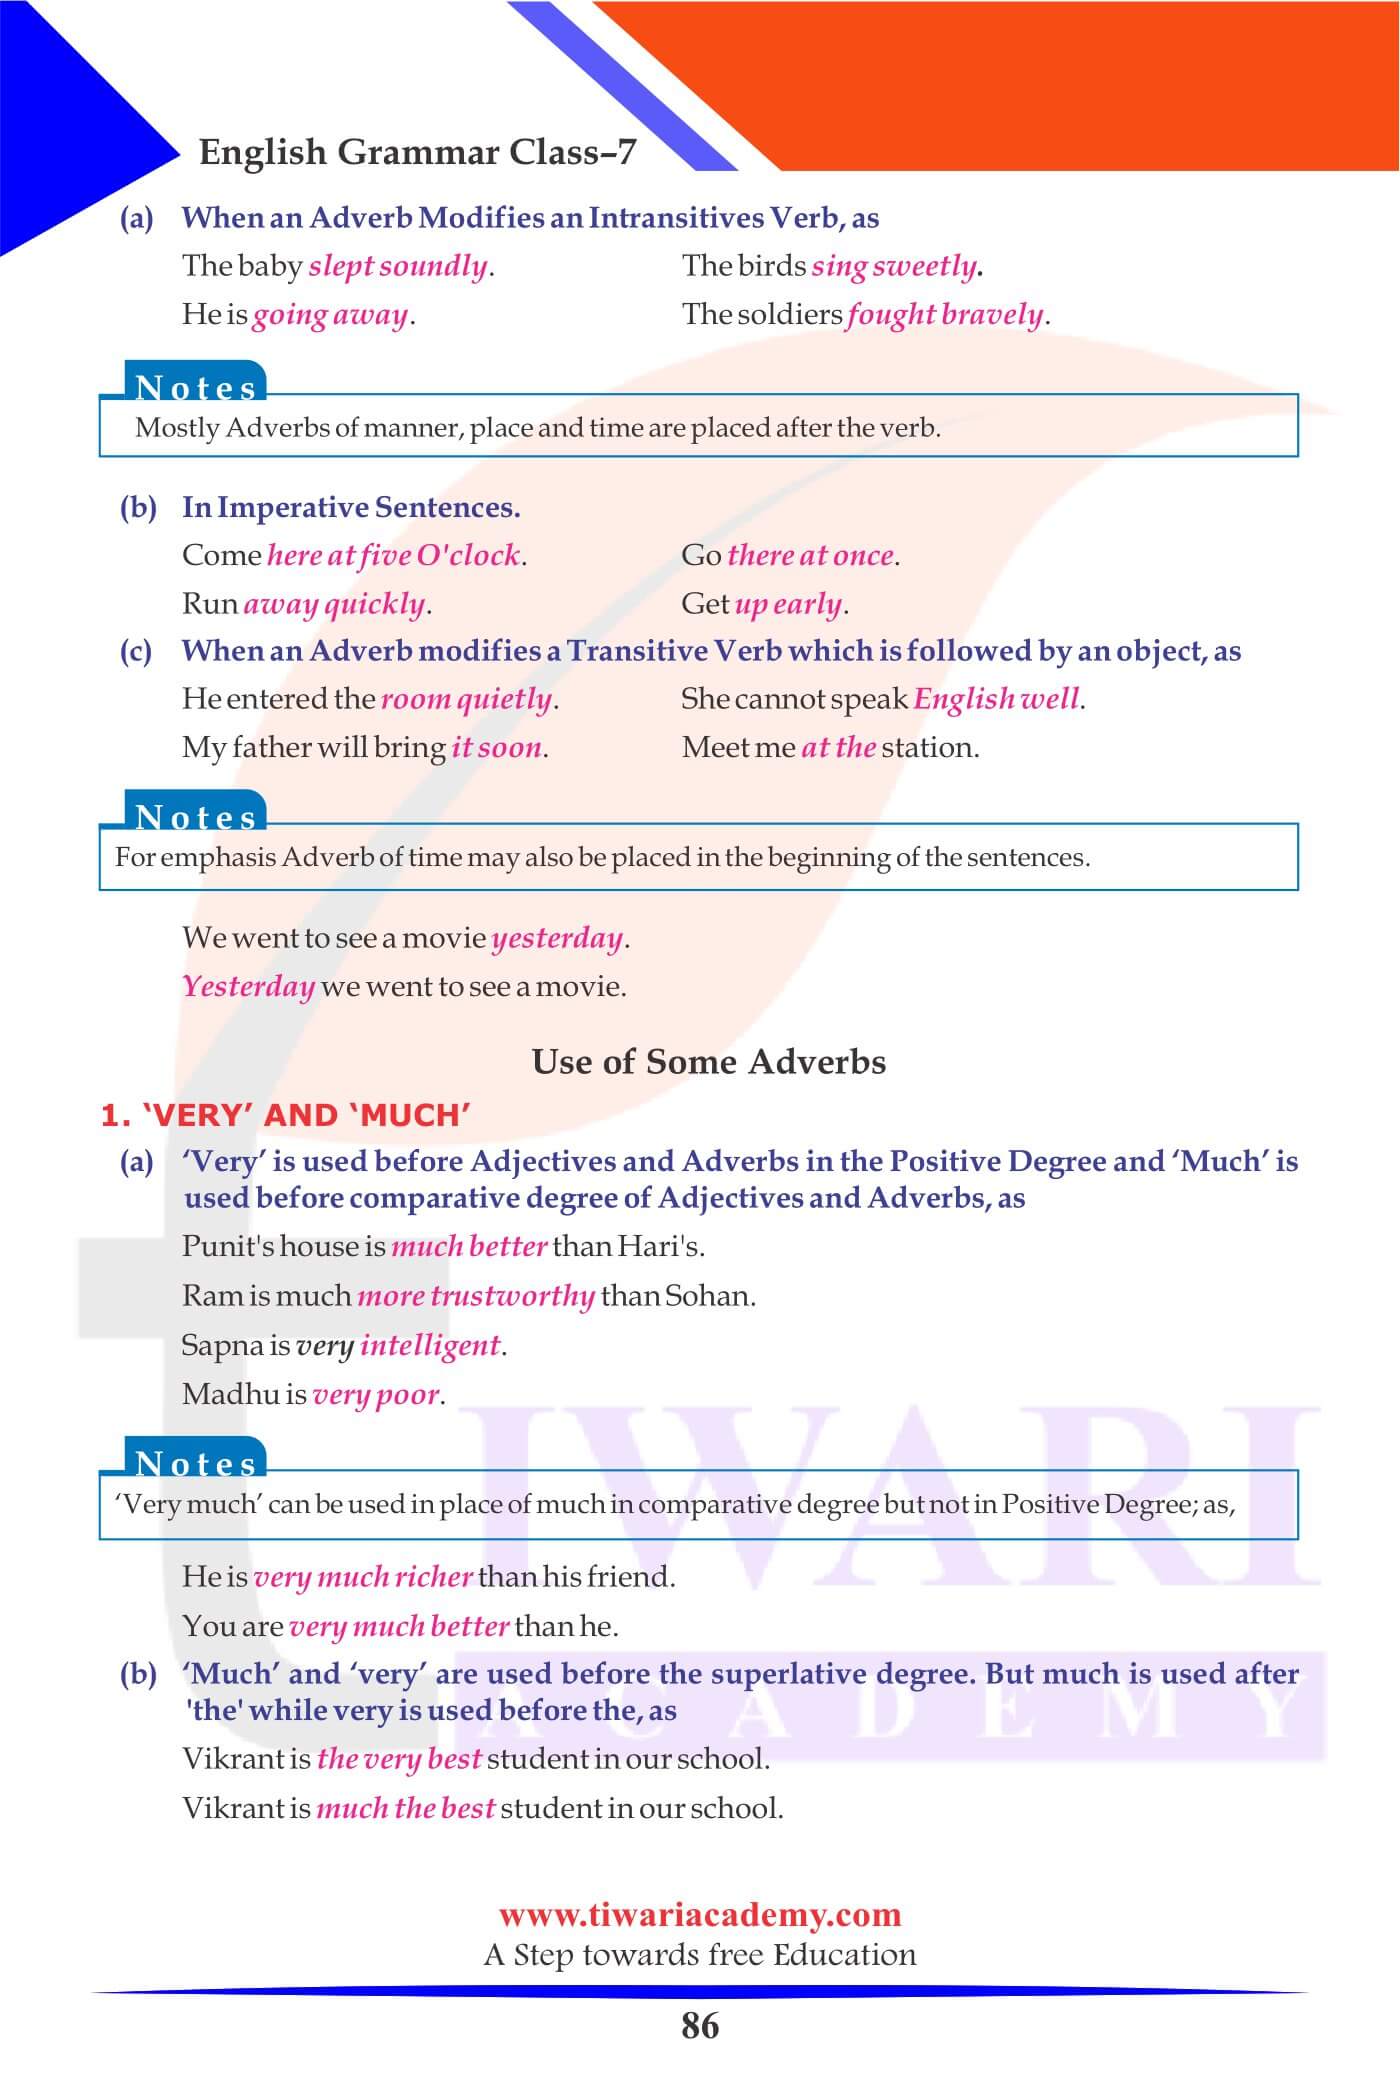 Class 7 English Grammar Chapter 13 Assignments